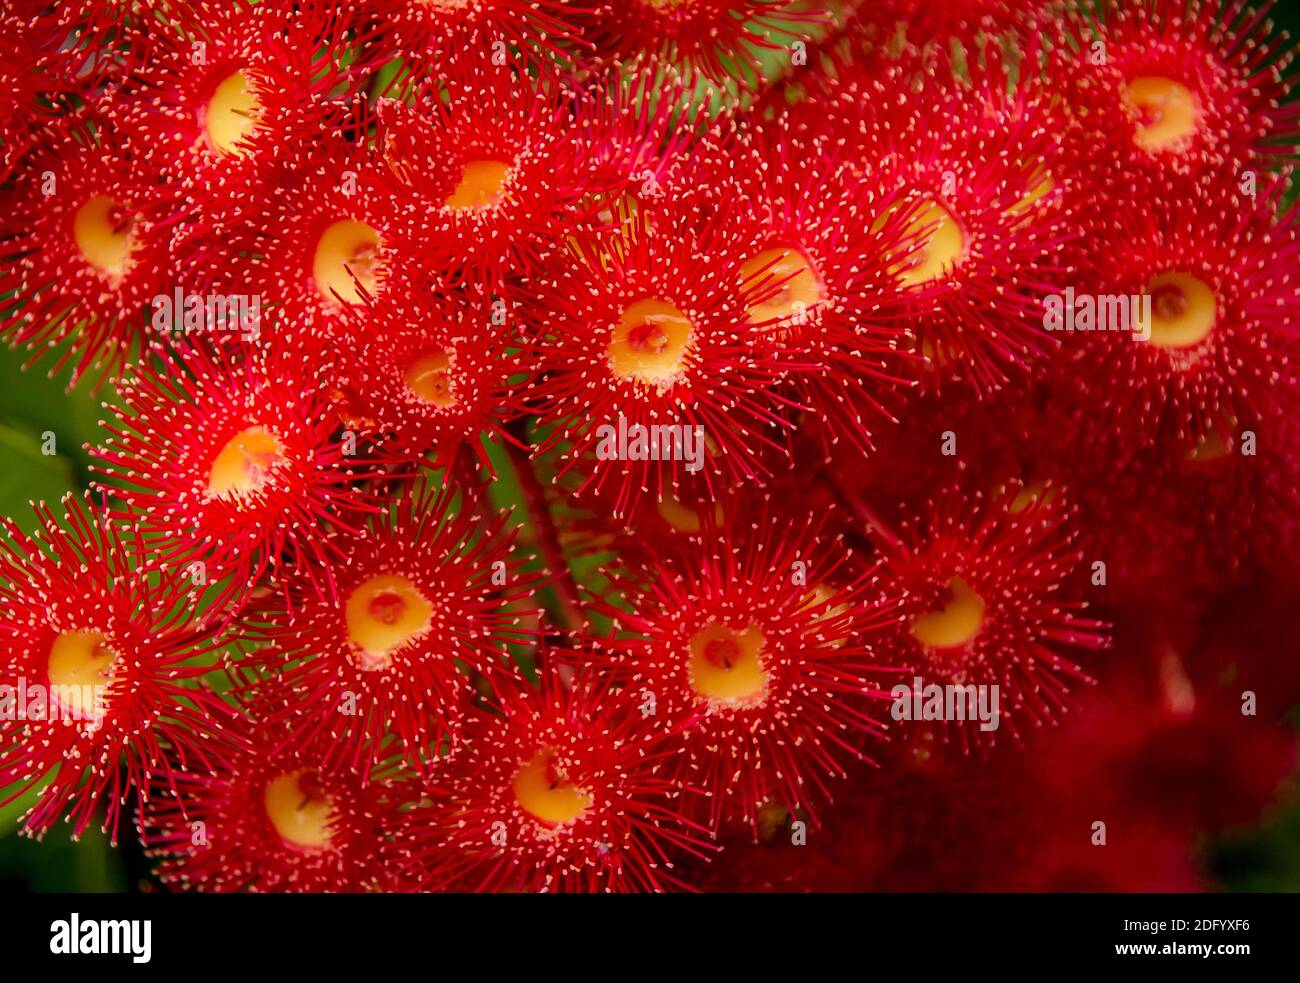 Sehr leuchtend rot blühende Zahnfleischblüten (Corymbia ficifolia). Keine Blütenblätter, alles Staubgefäße. Gummibaum im privaten Garten in Queensland, Australien. Stockfoto